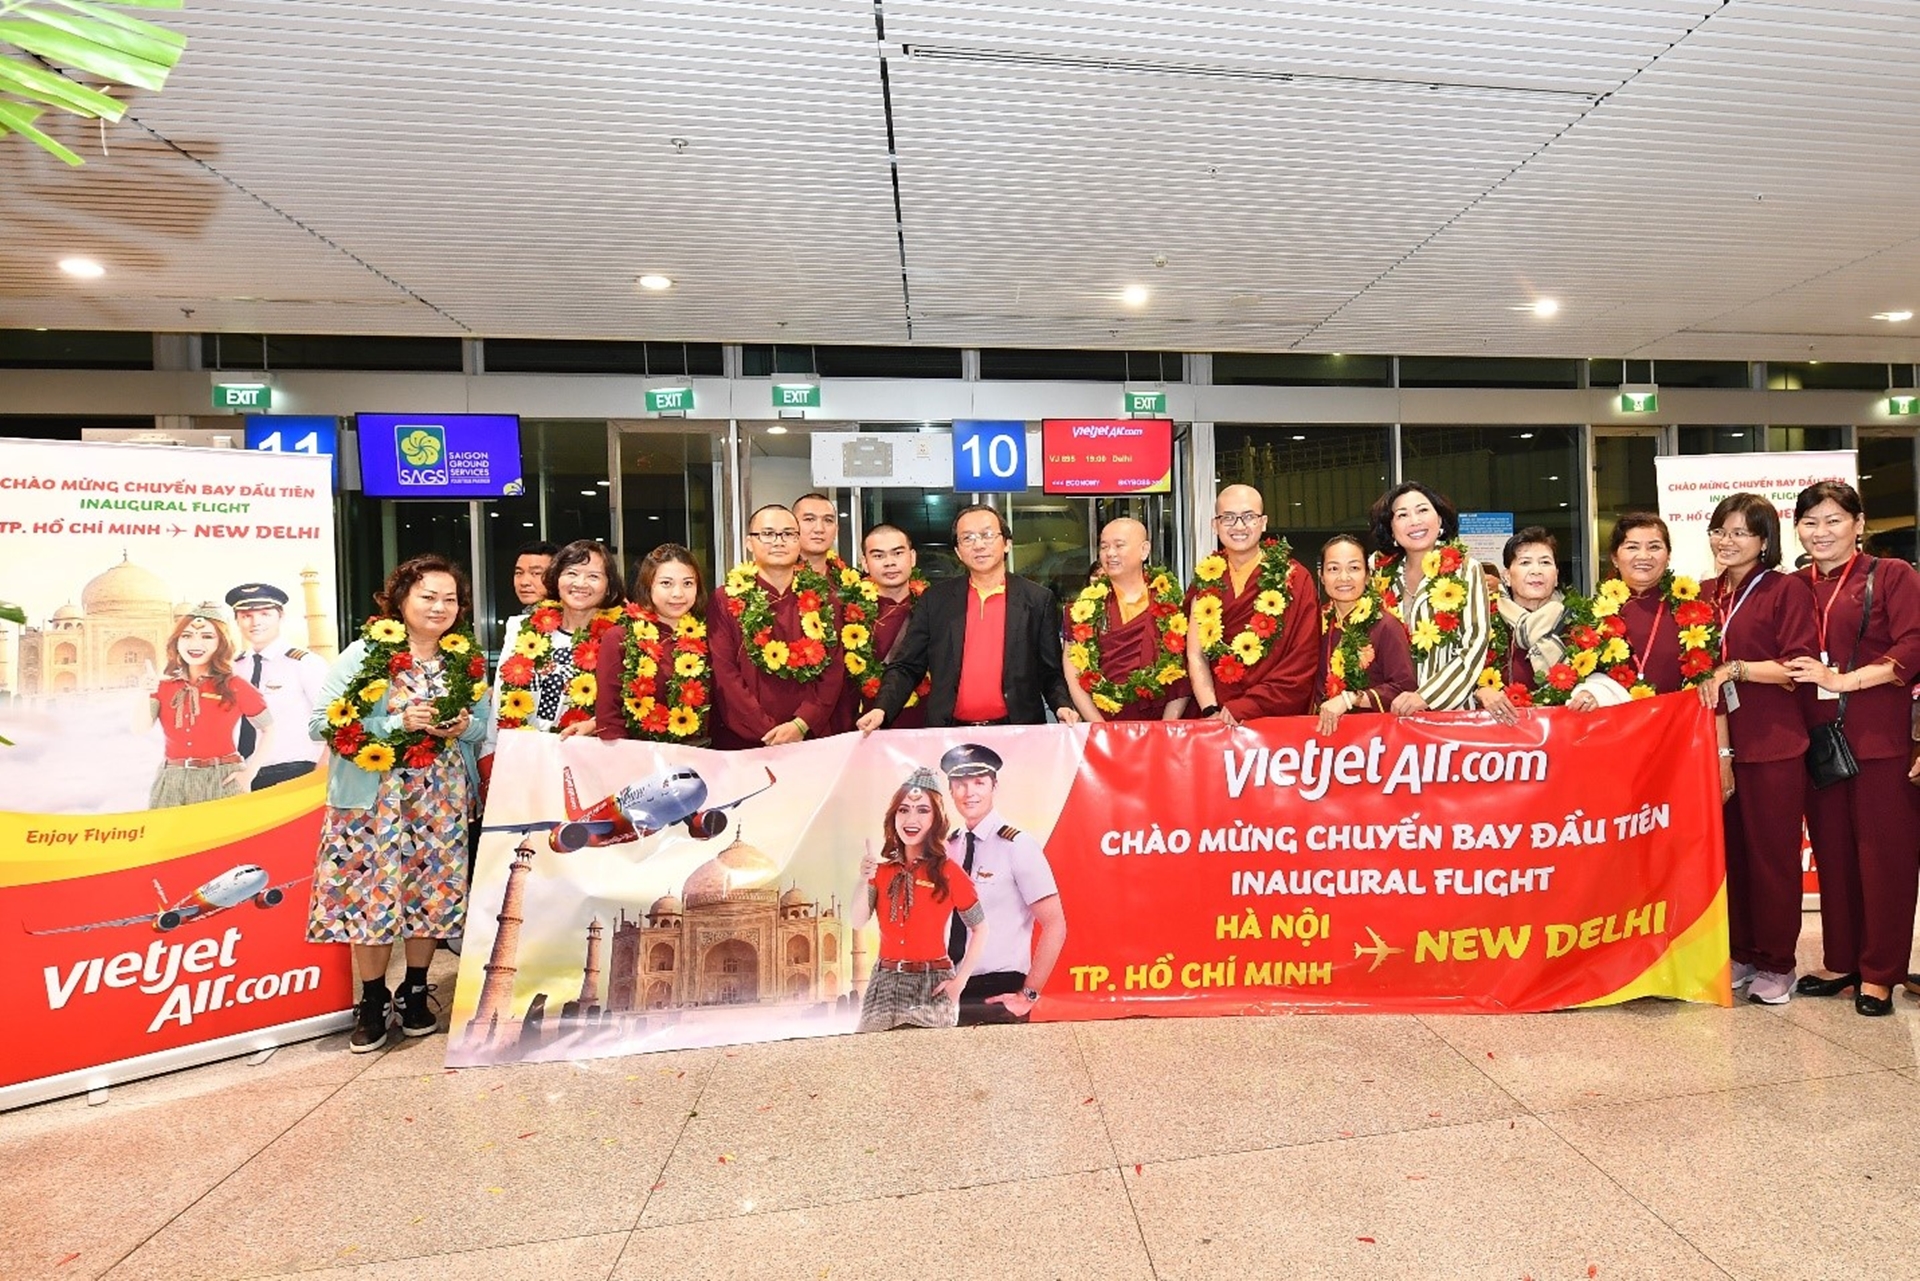 Vietjet operates direct flights from Hanoi, Ho Chi Minh City to New Delhi